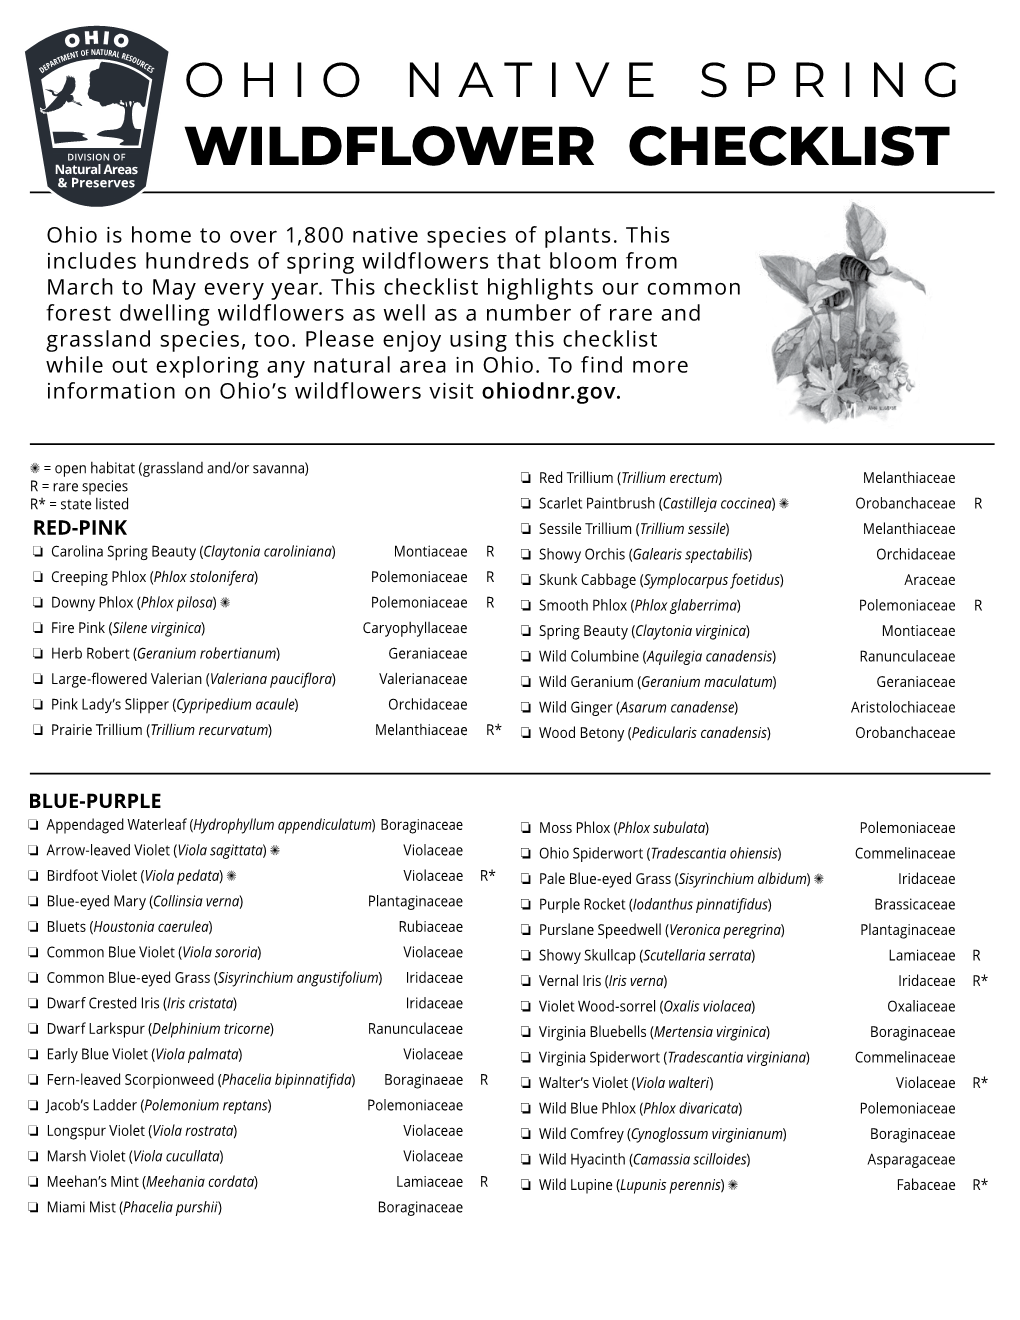 Ohio Native Spring Wildflower Checklist